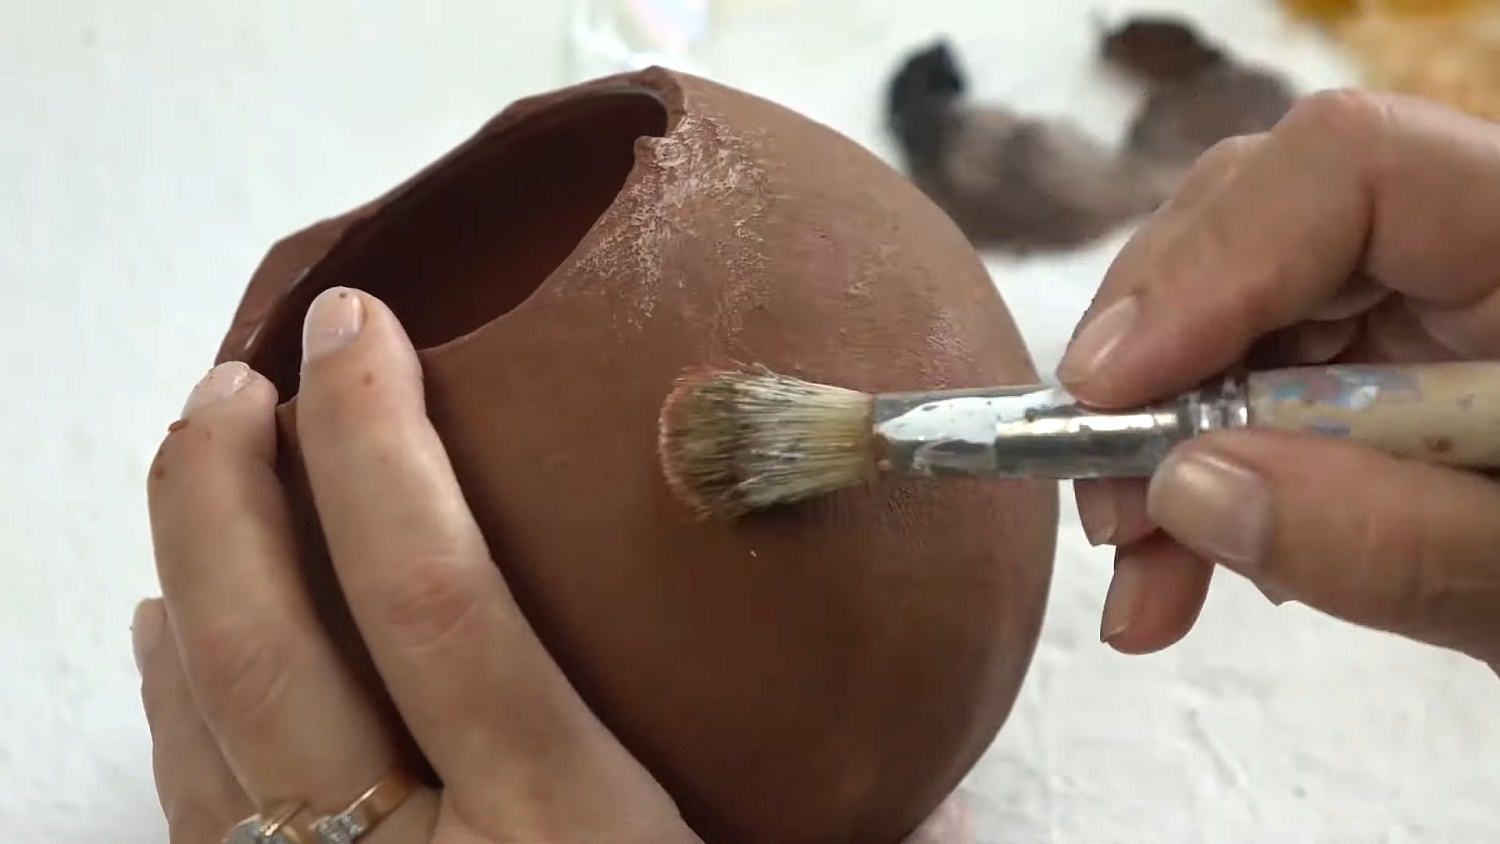 Керамические вазочки без глины! Имитация керамики своими руками. Рельефная грубая паста от ТАИР